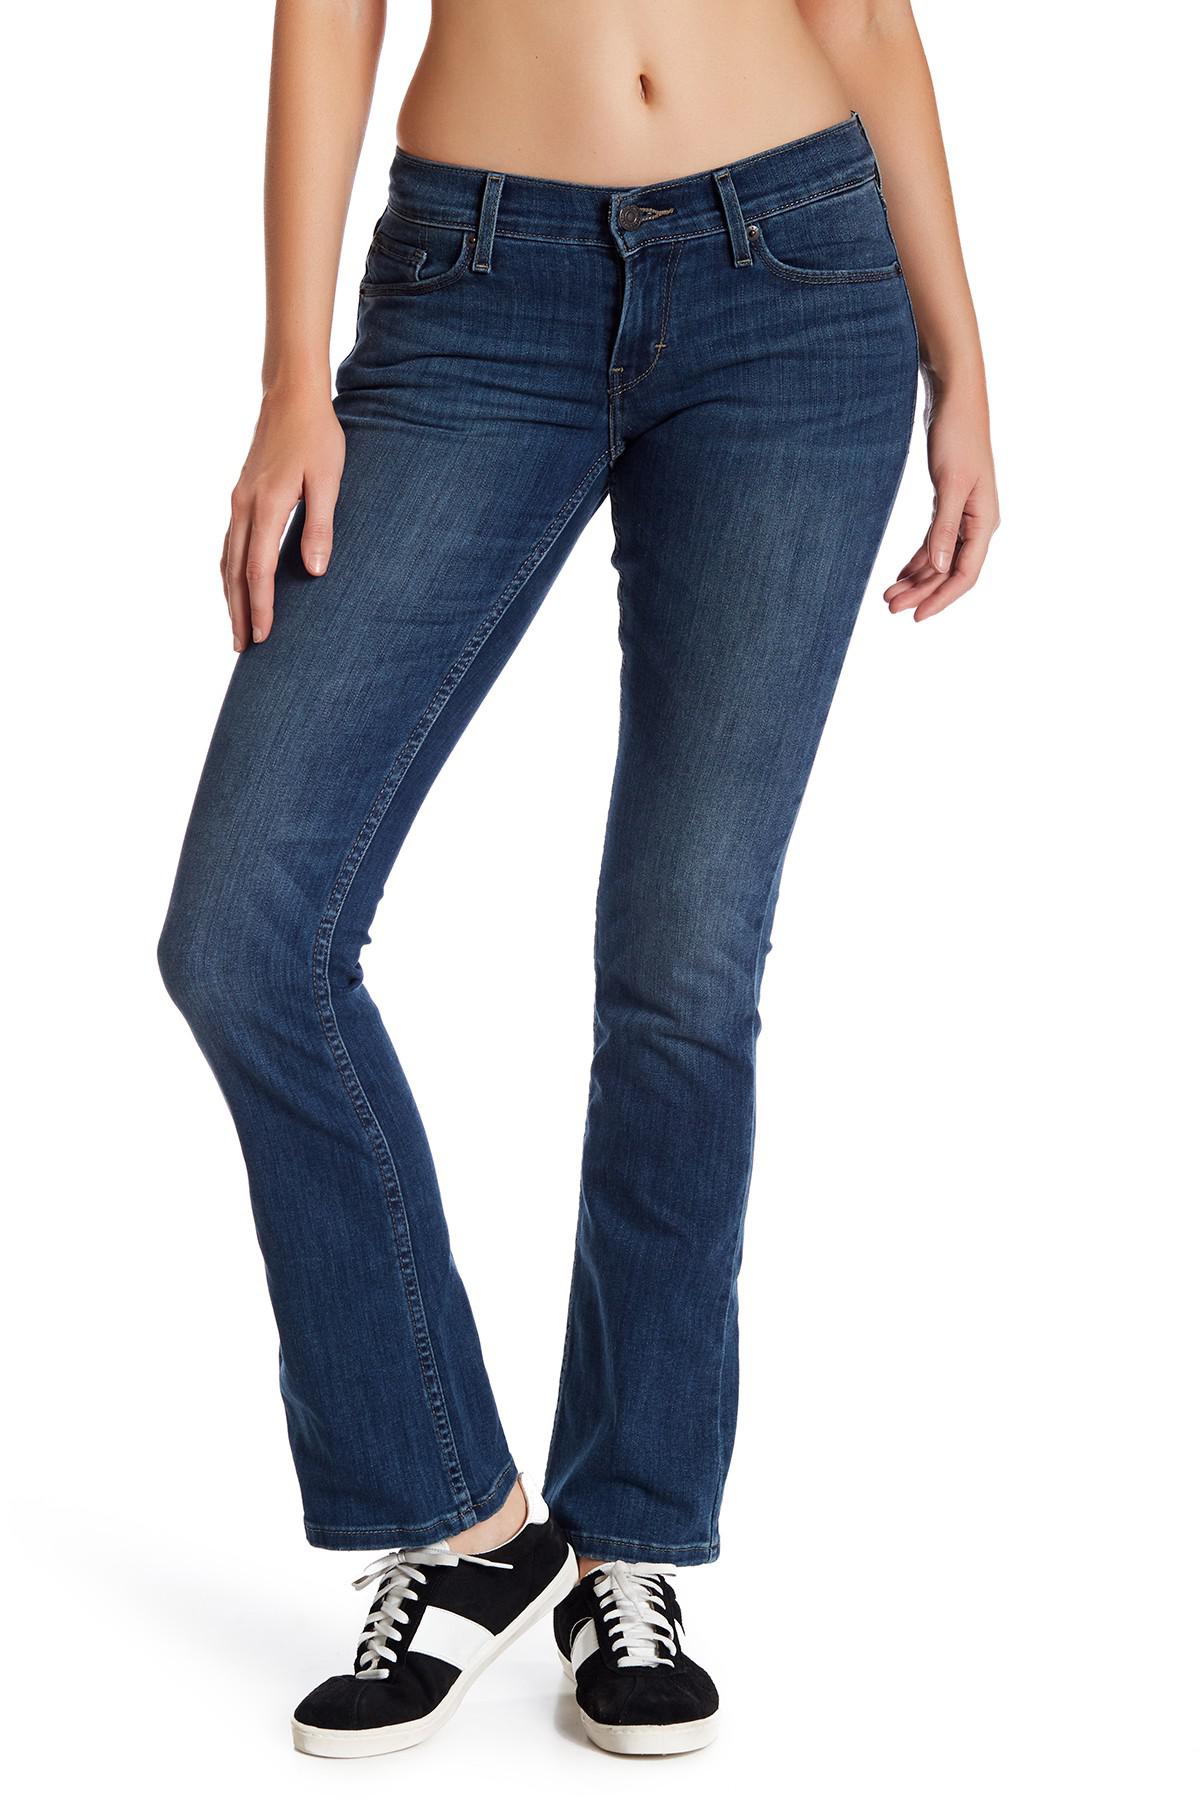 Introducir 52+ imagen levi’s super low rise jeans 524